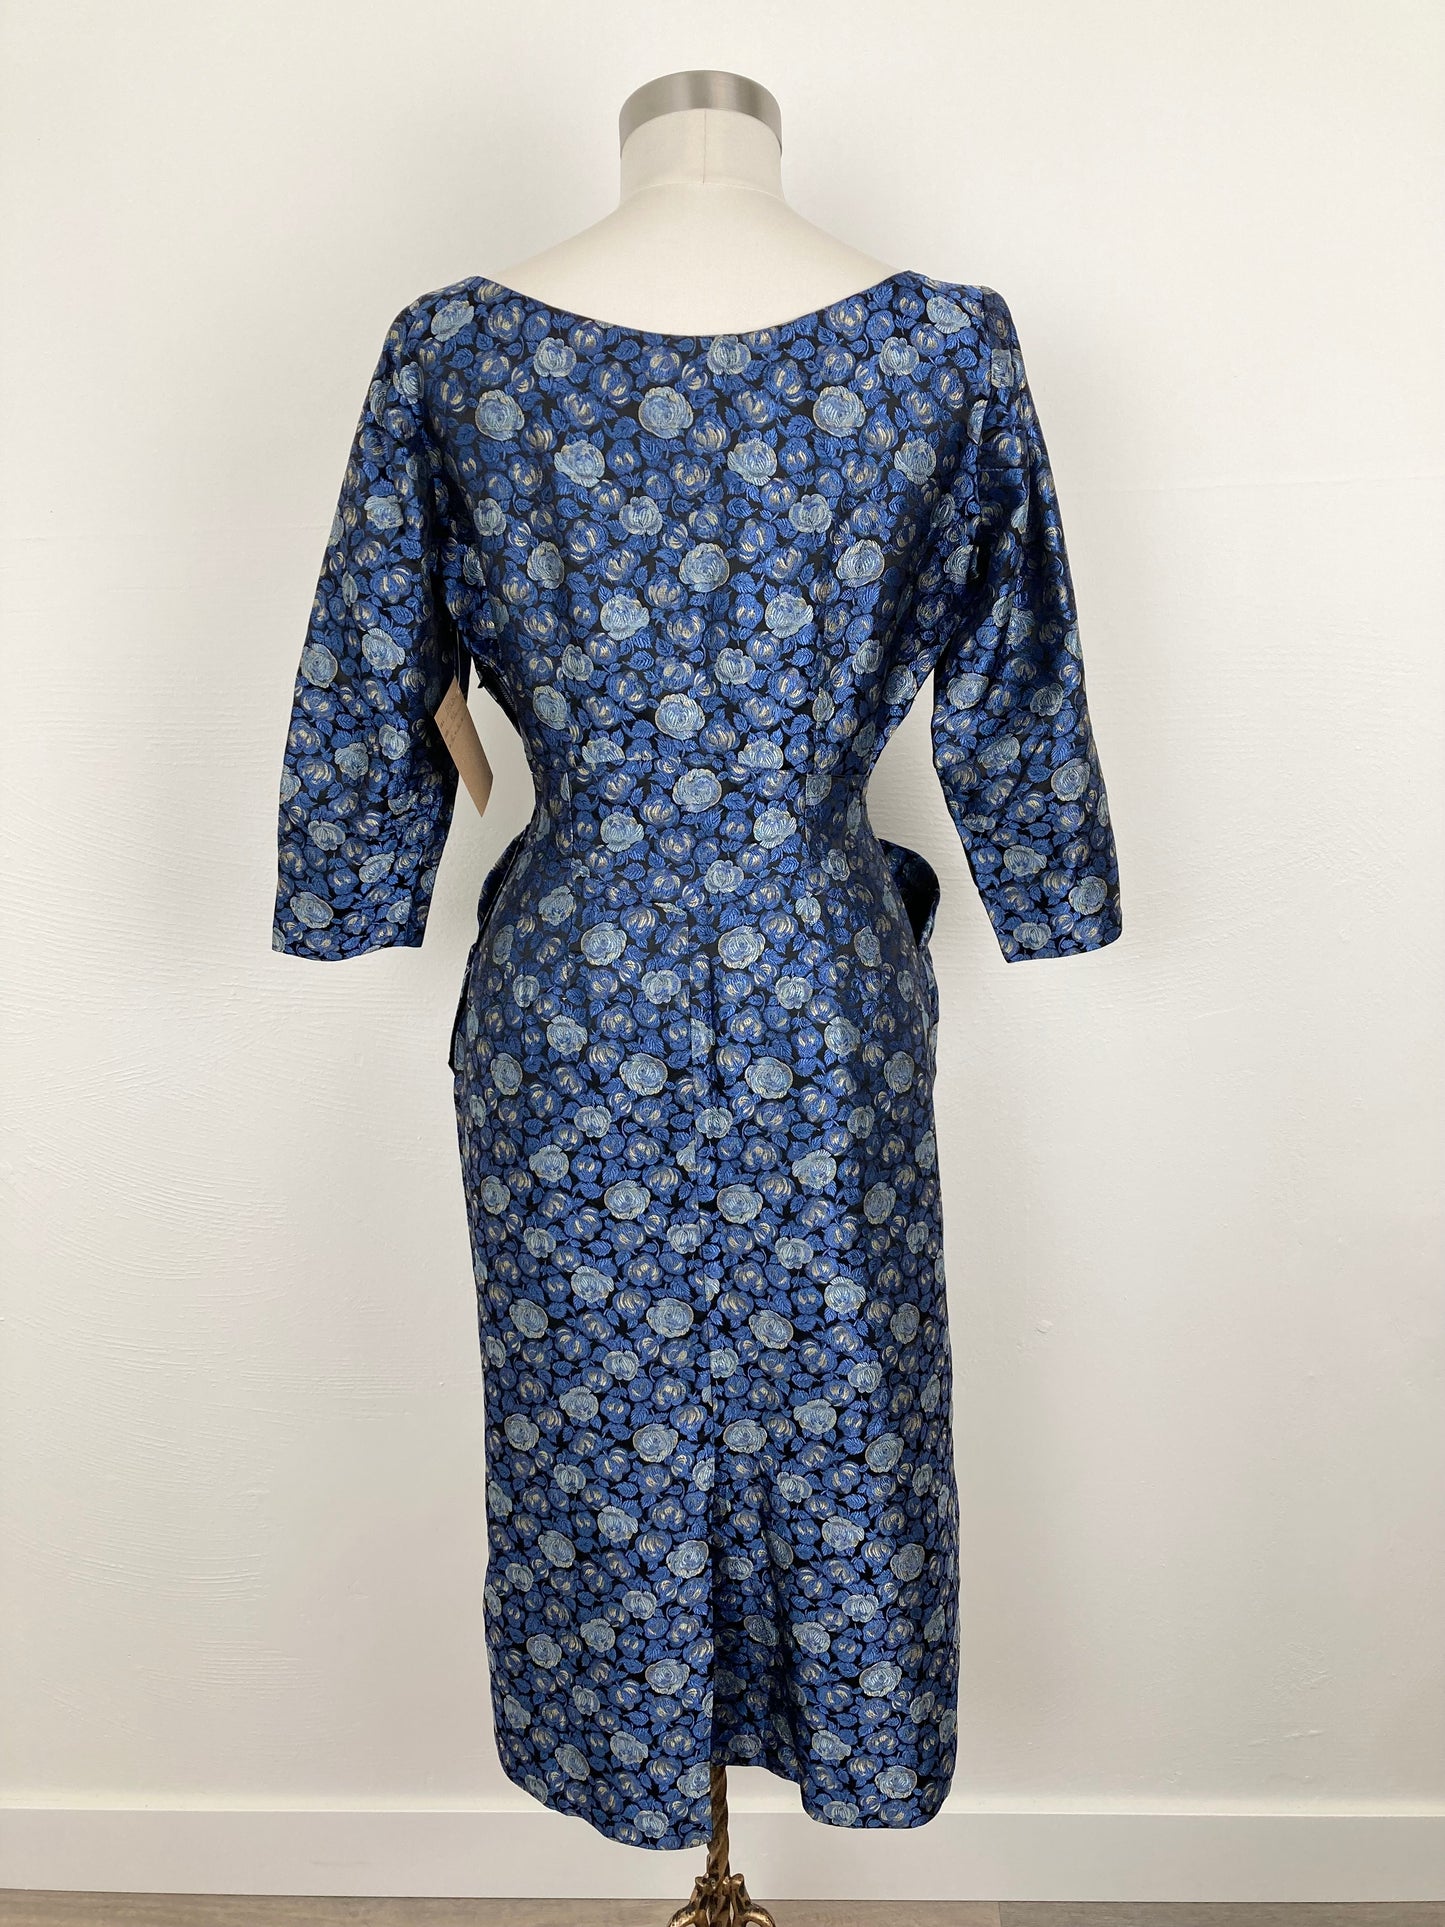 1950s Blue Brocade Dress, Size M/L